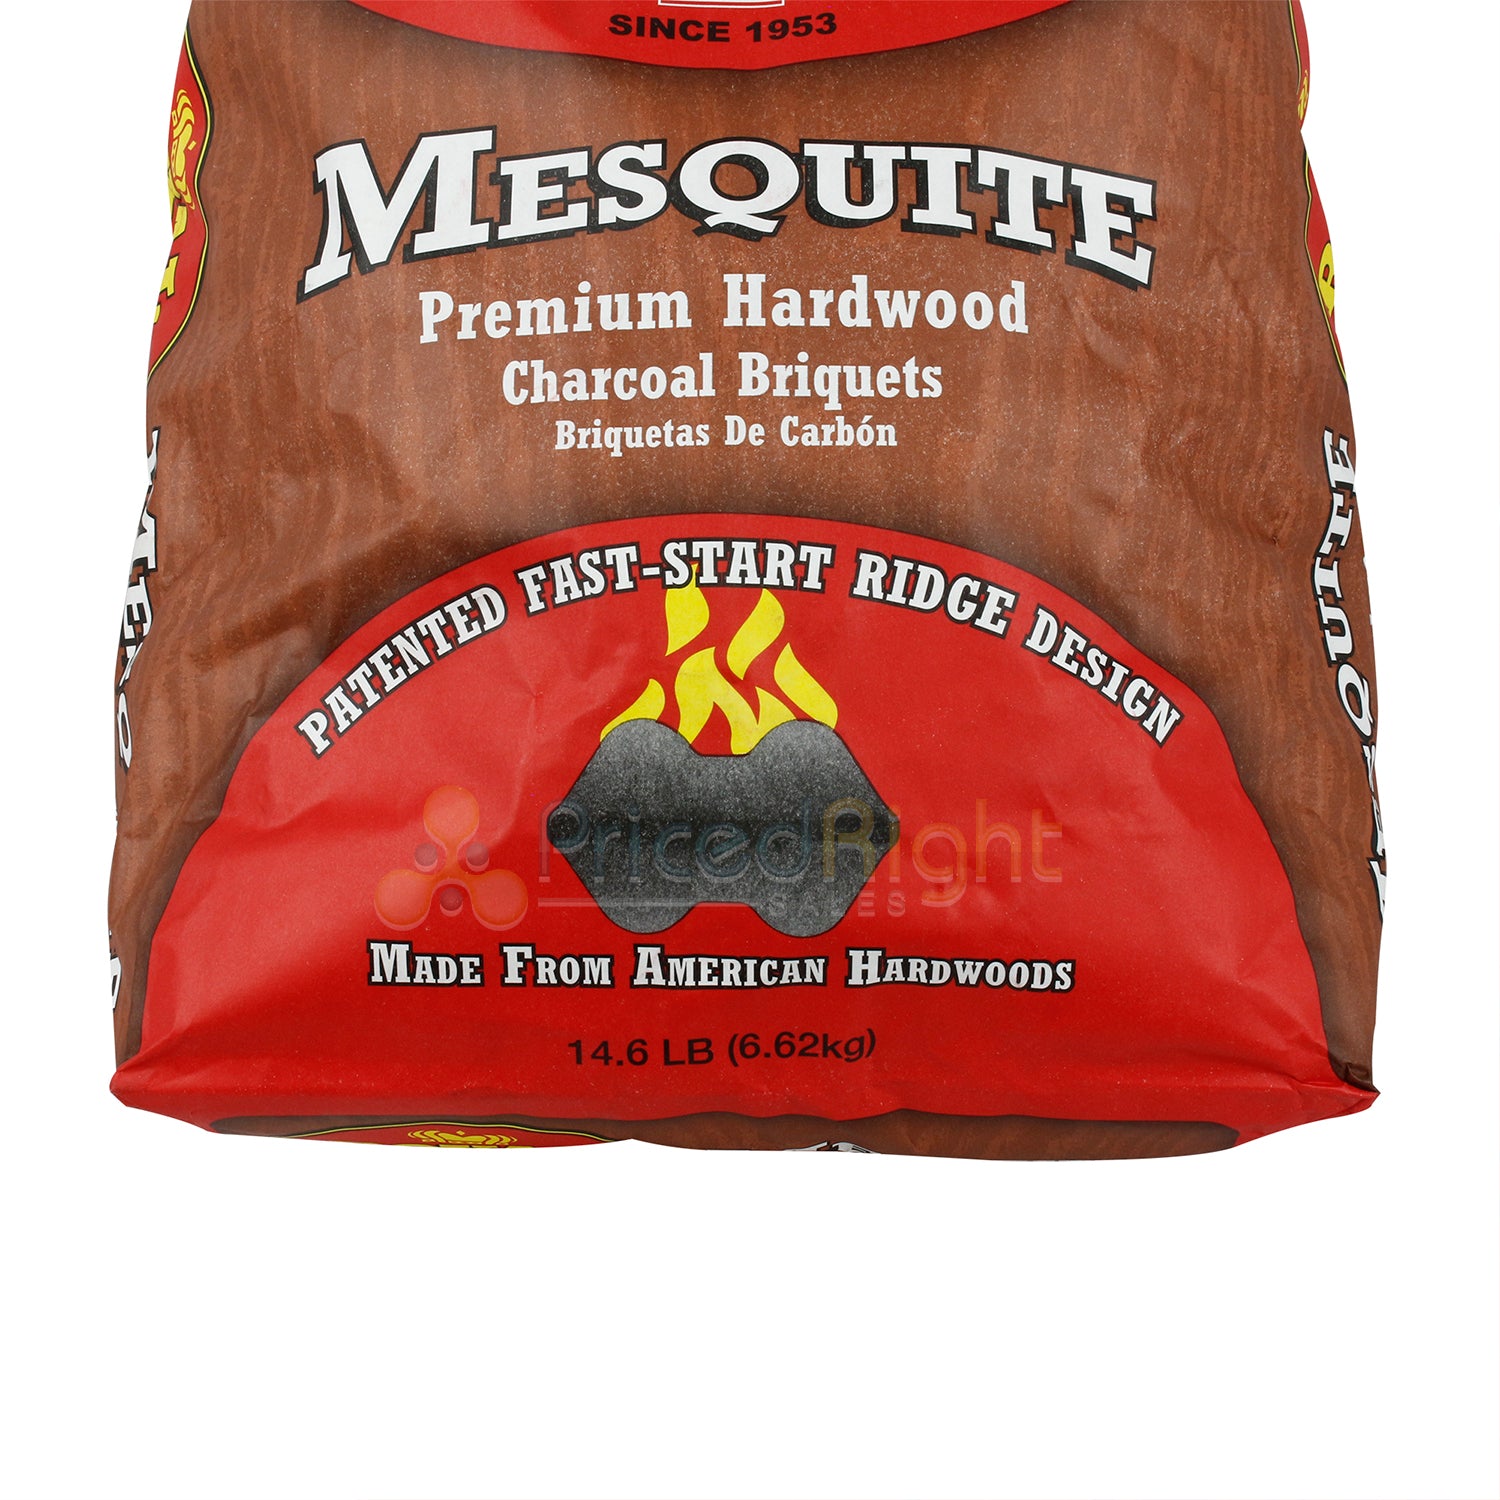 Royal Oak Mesquite Charcoal Briquets Premium Hardwood Fast-Start Ridges 14.6 LB